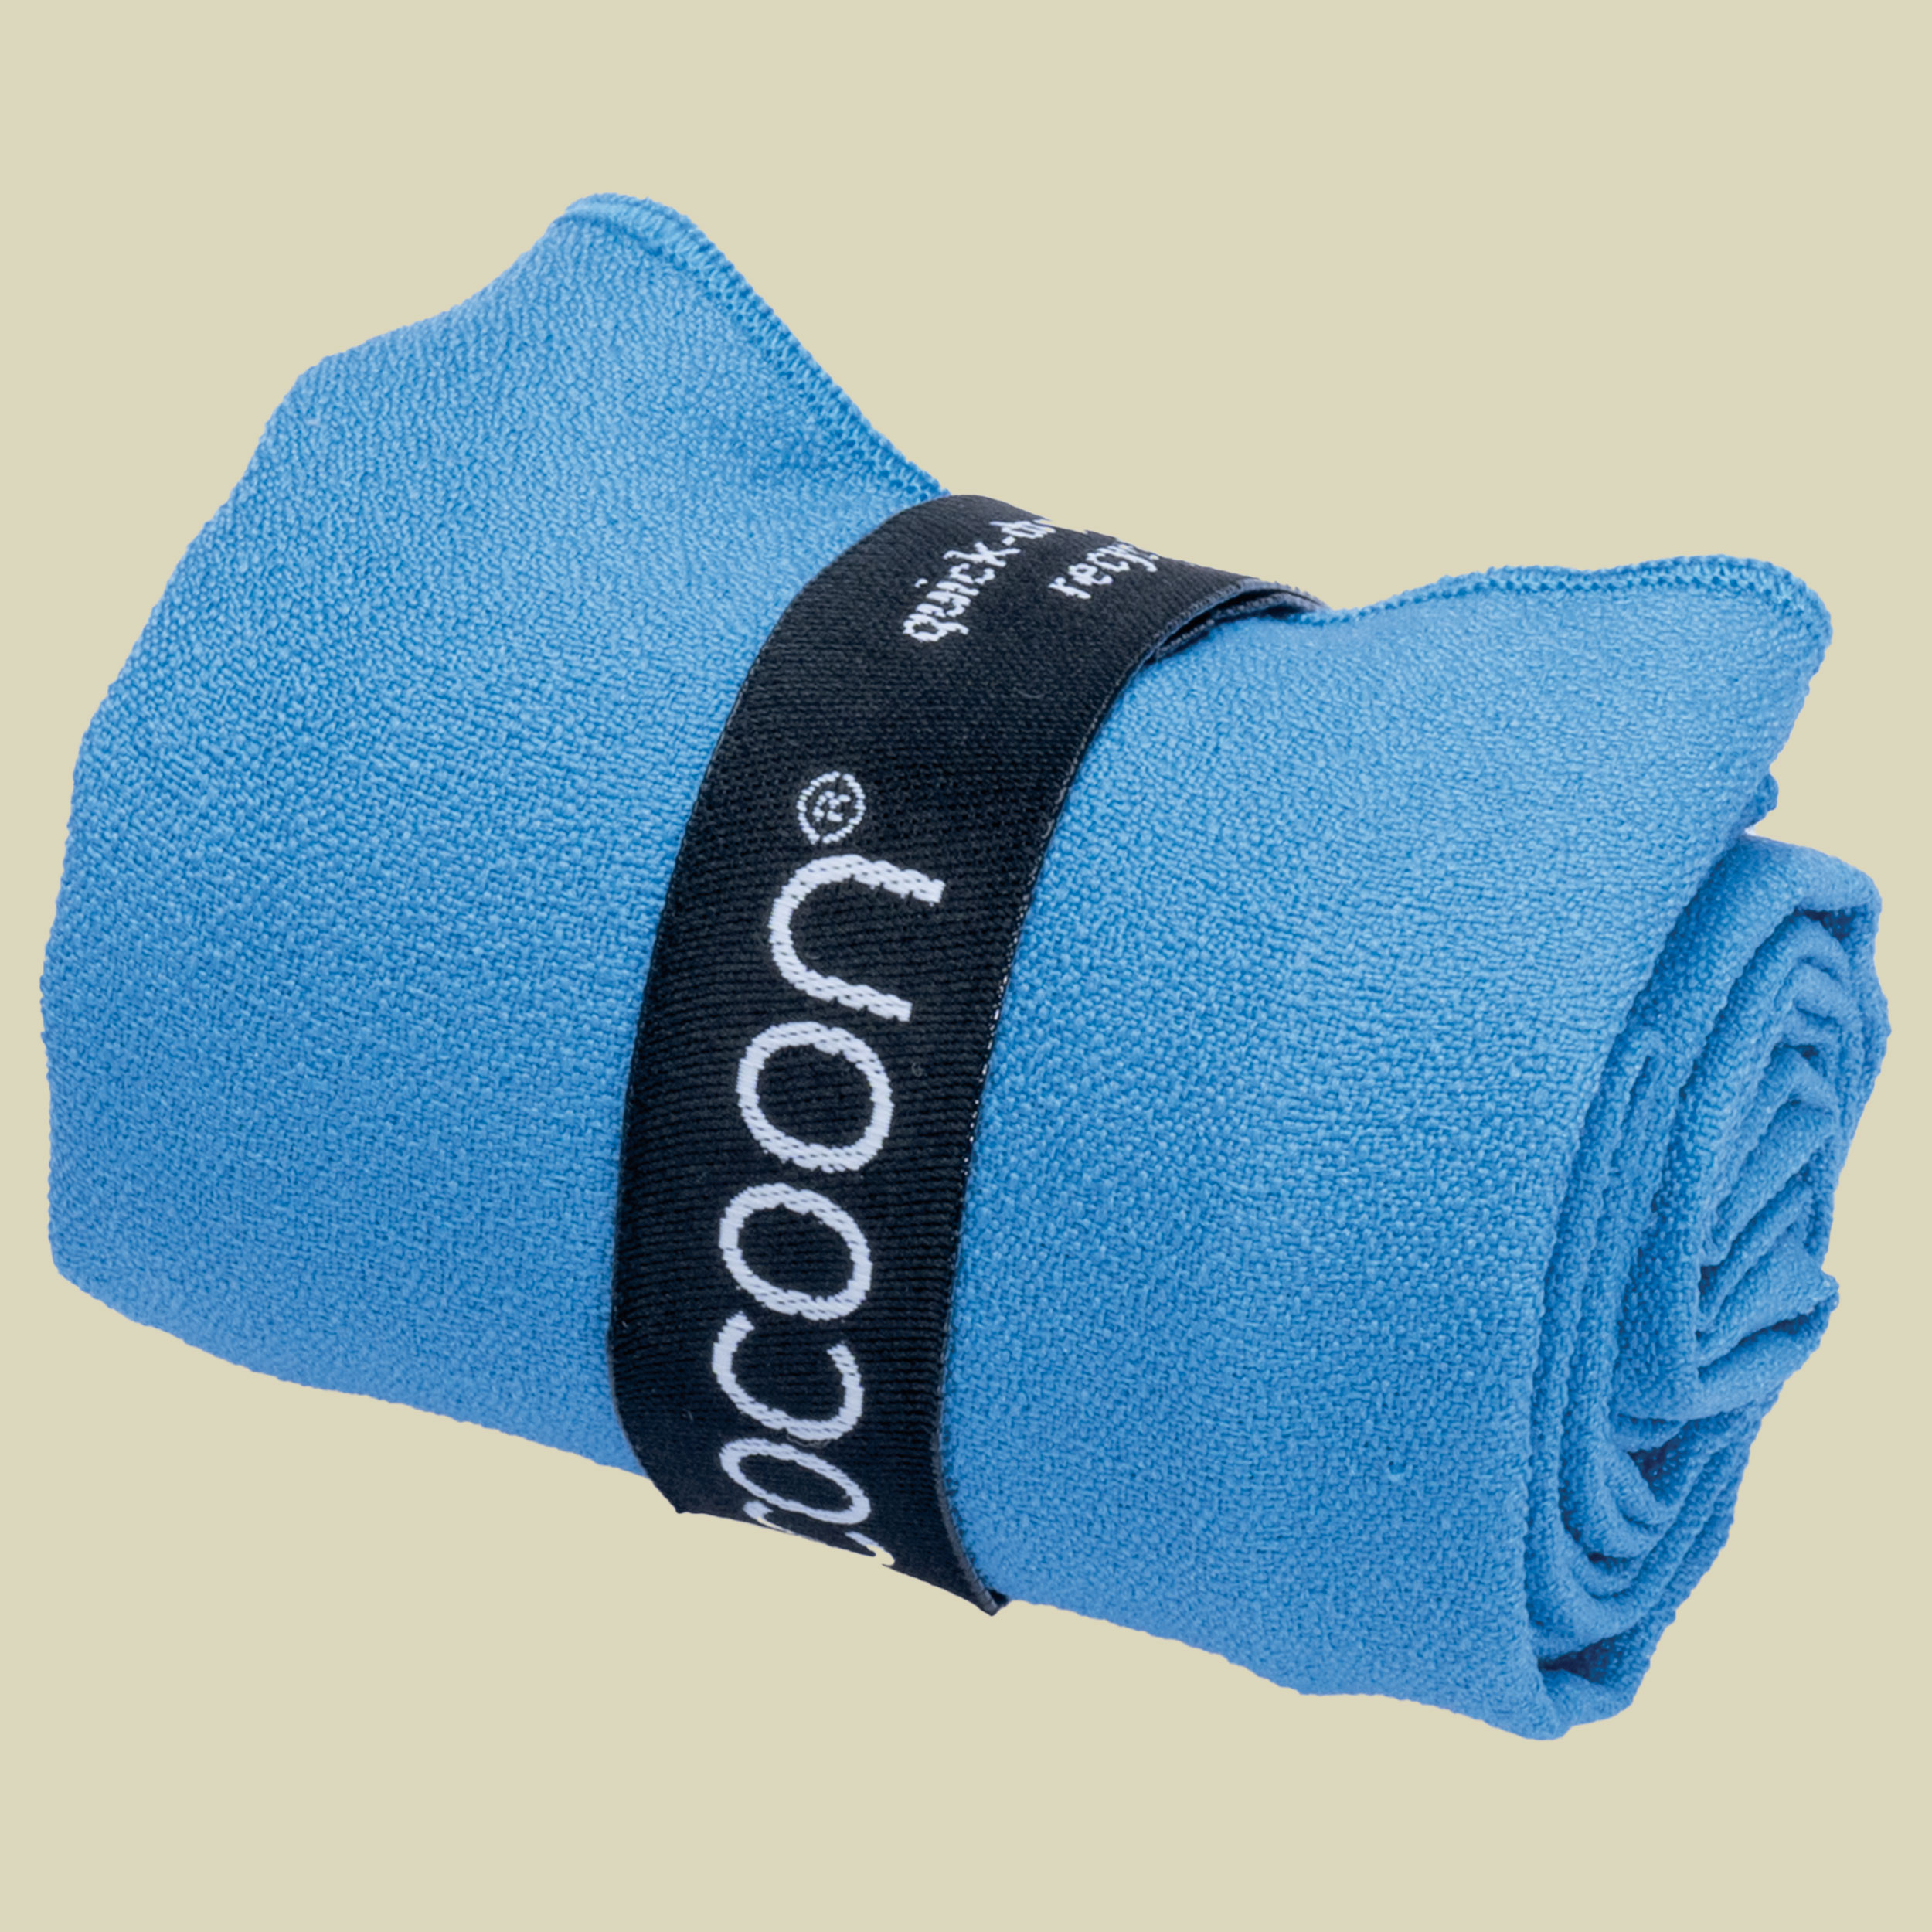 Microfiber Towel Hyperlight S blau - lagoon blue